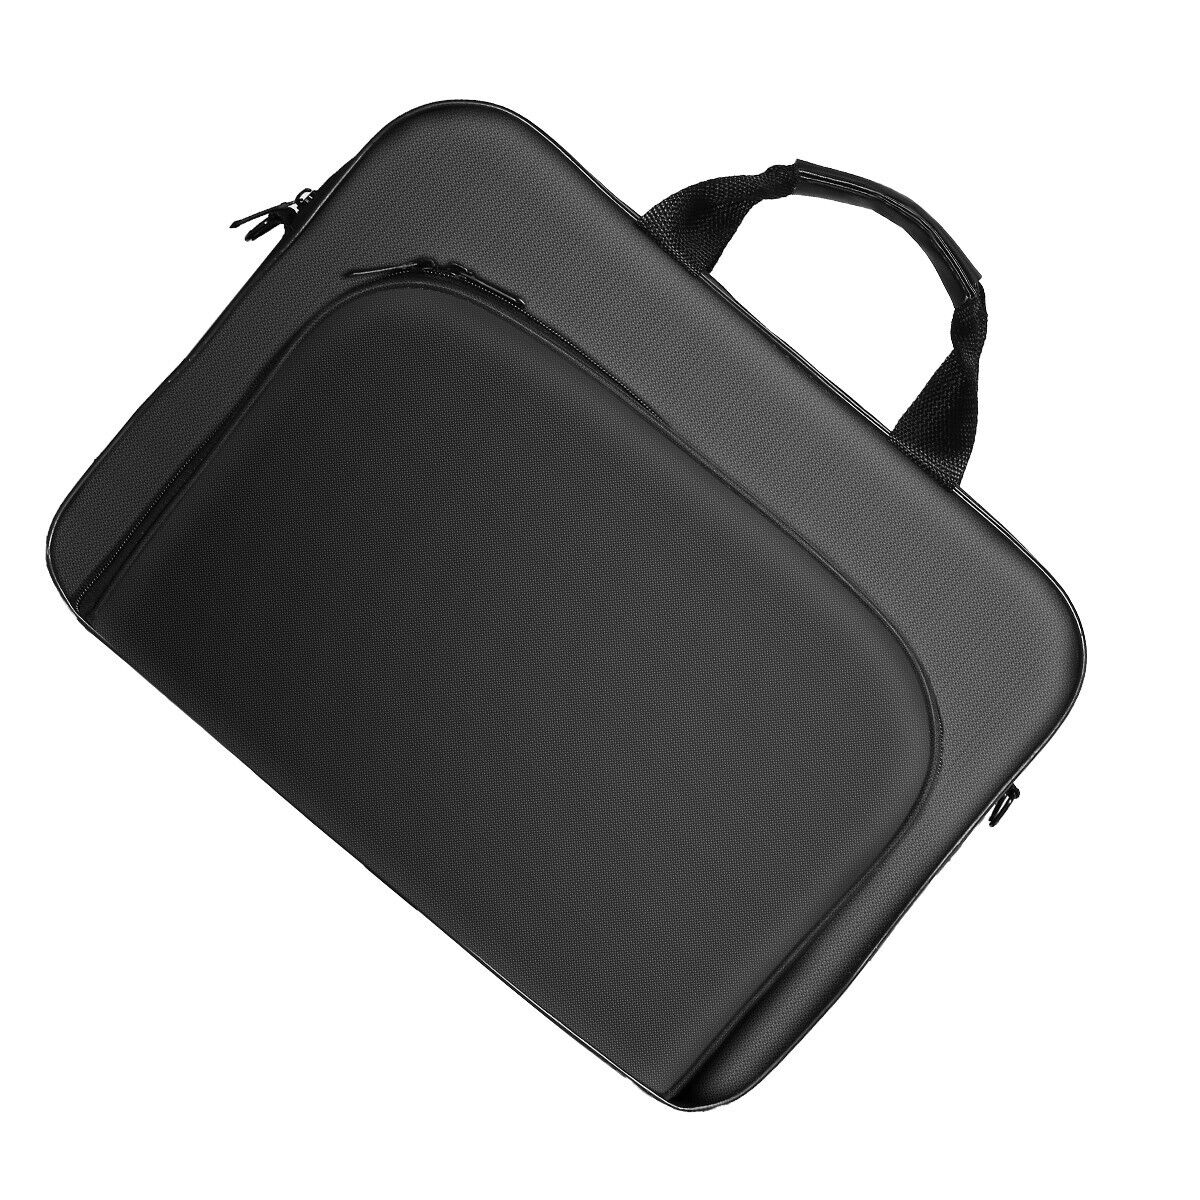 Laptop Bag Case With Shoulder Strap For 13"14"15.6" HP/Lenovo/ Asus/Macbook DELL